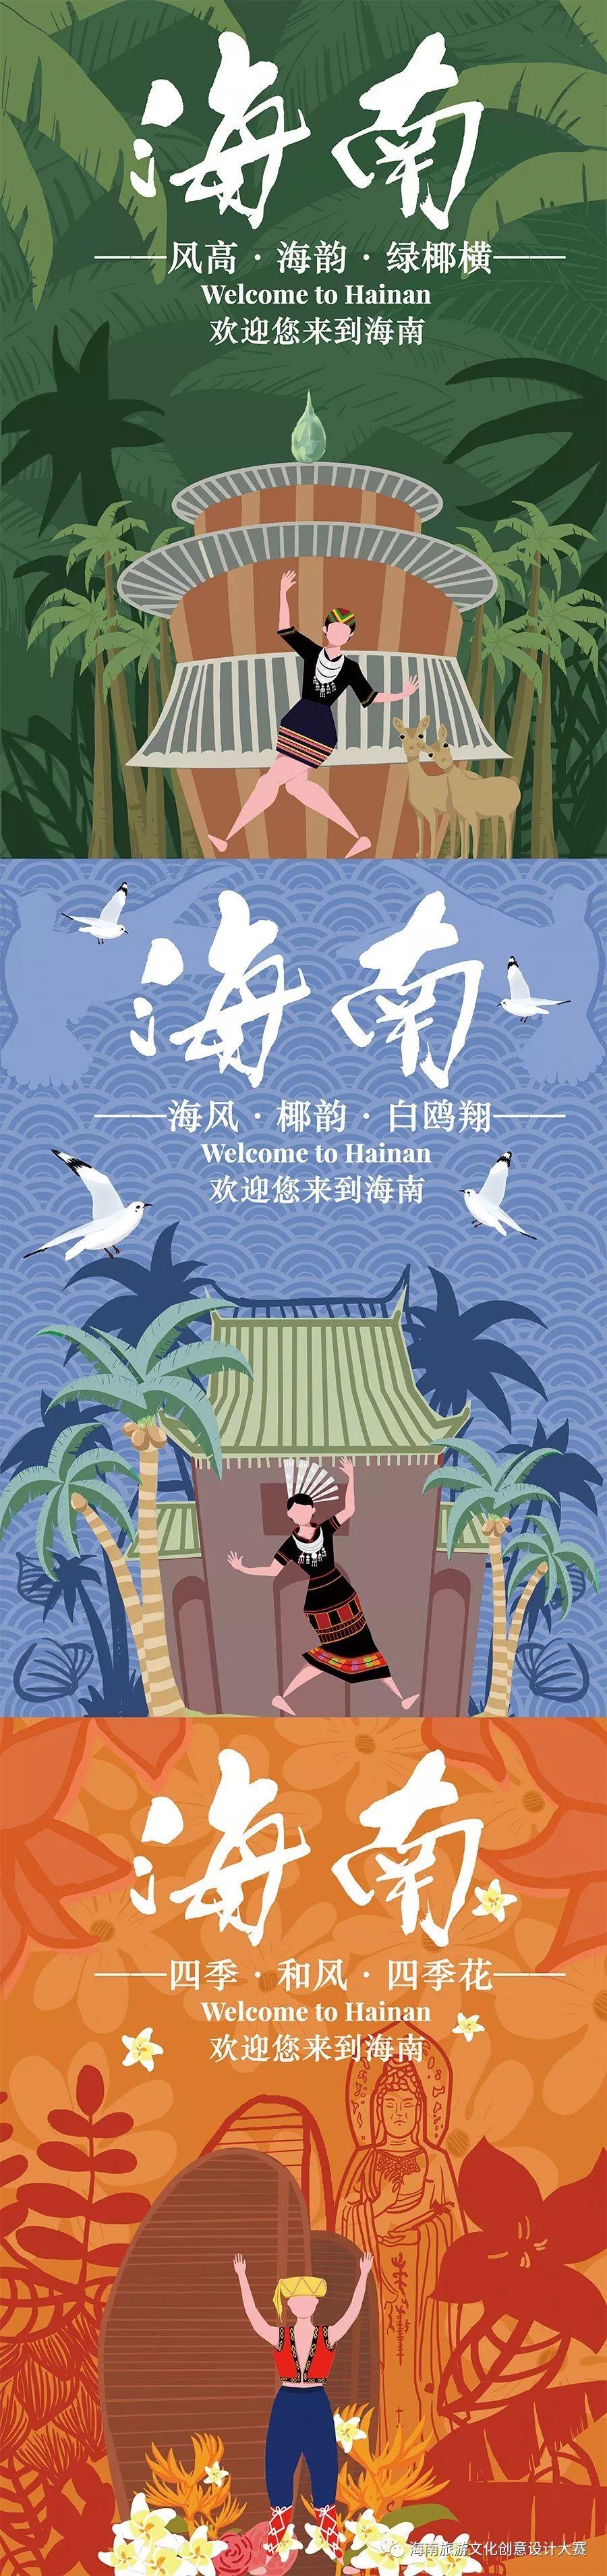 2019第二届国际大学生海南旅游文化创意设计大赛海报